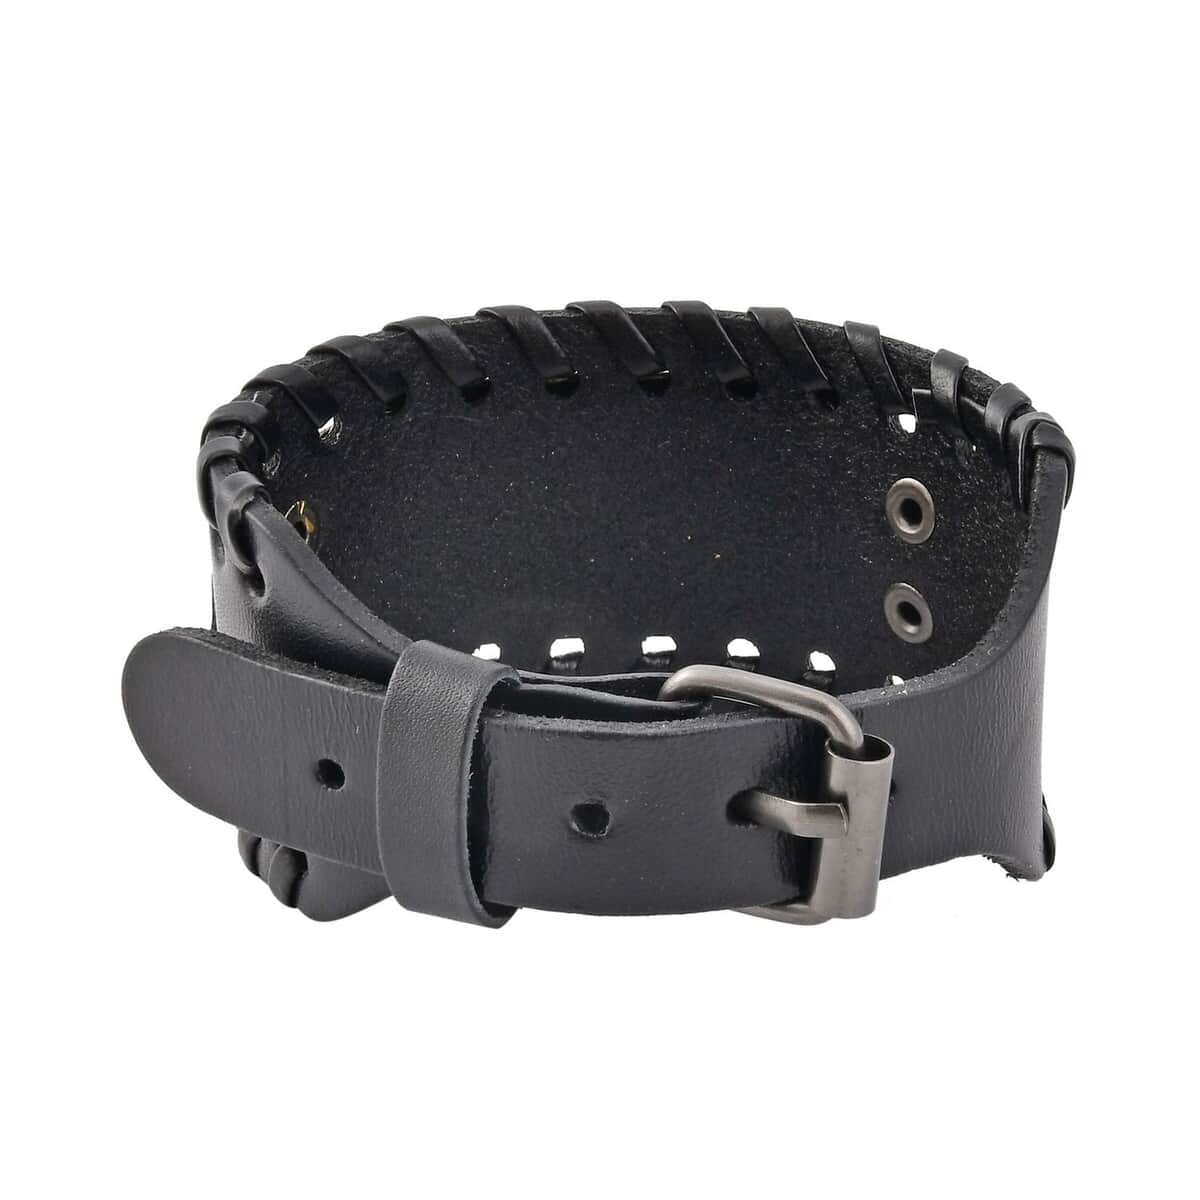 Set of 2 Black Color Genuine Leather and Dualtone Adjustable Bracelet image number 4